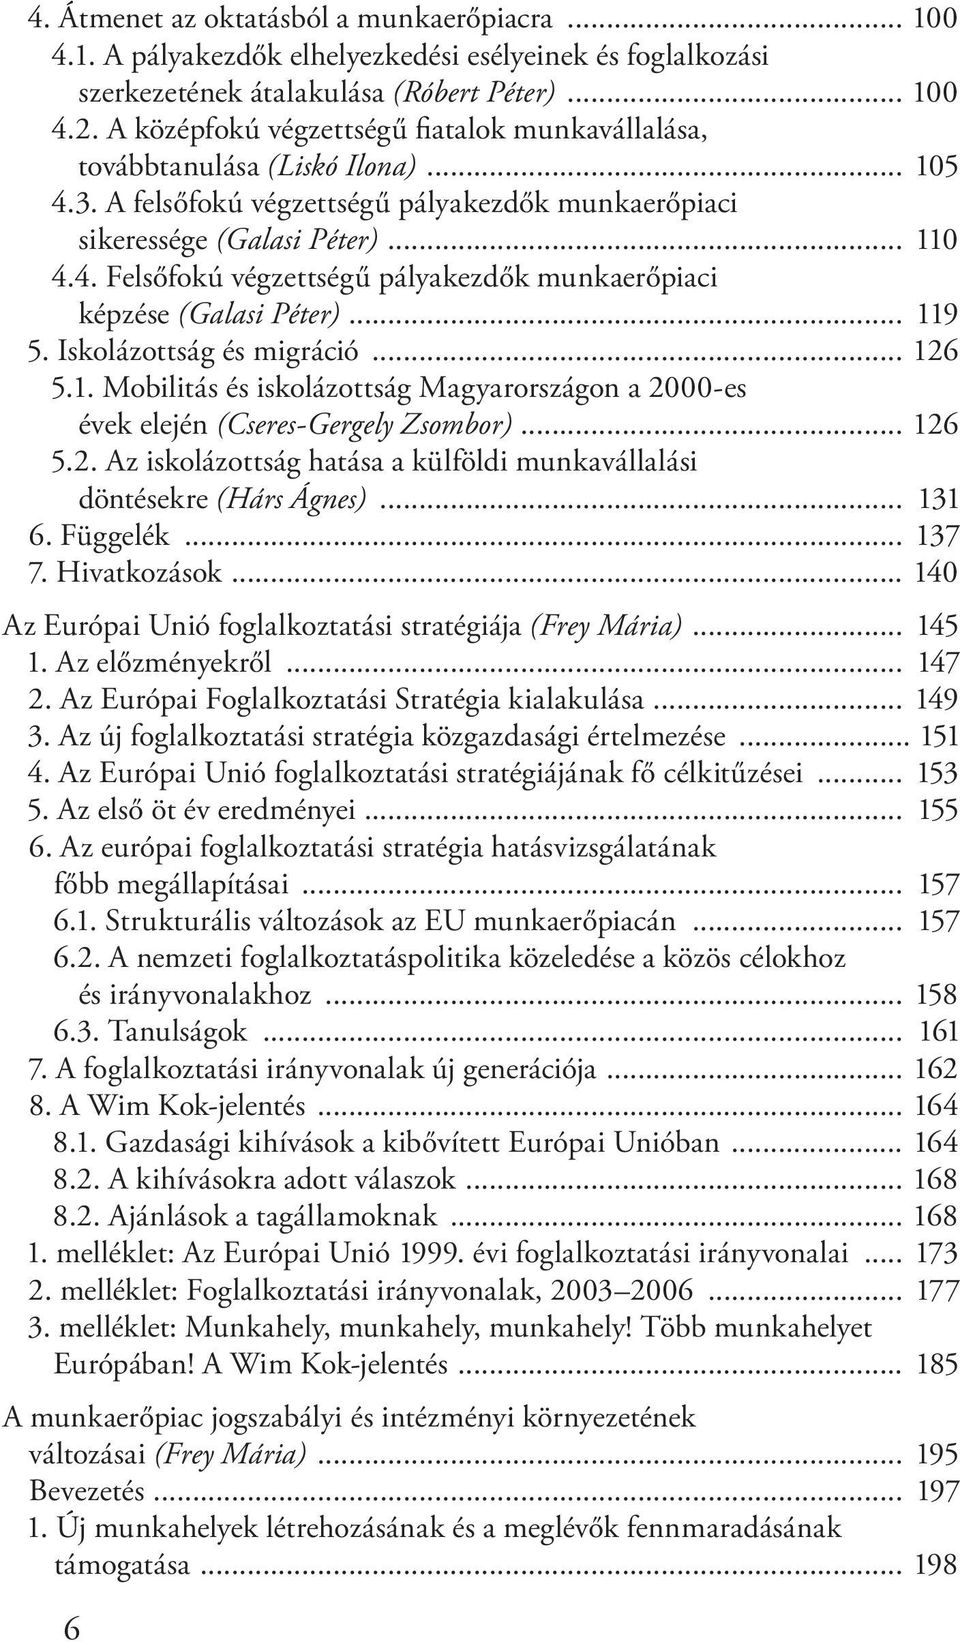 .. 119 5. Iskolázottság és migráció... 126 5.1. Mobilitás és iskolázottság Magyarországon a 2000-es évek elején (Cseres-Gergely Zsombor)... 126 5.2. Az iskolázottság hatása a külföldi munkavállalási döntésekre (Hárs Ágnes).